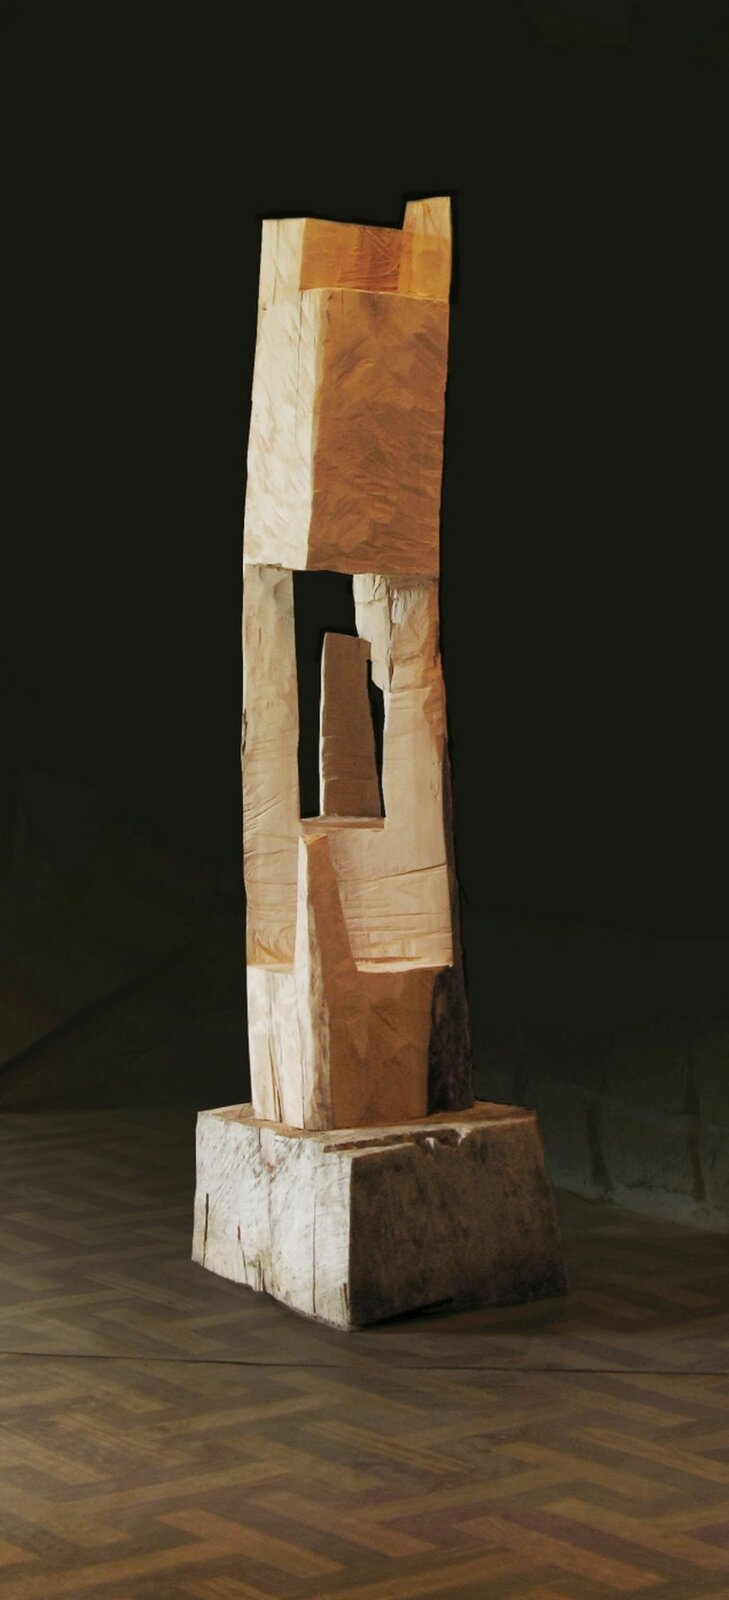 Ilustracja przedstawia rzeźbę Krzysztofa Mazura „Kapliczka przełamana”. Jest to drewniany, ciosany pień drzewa ukształtowany w bryłę zbliżoną do prostopadłościanu, usytuowany na podstawie. W środku pień jest wydrążony. W prześwicie oraz na zewnątrz znajdują się pozostawione, niewycięte, pionowe fragmenty drewna.